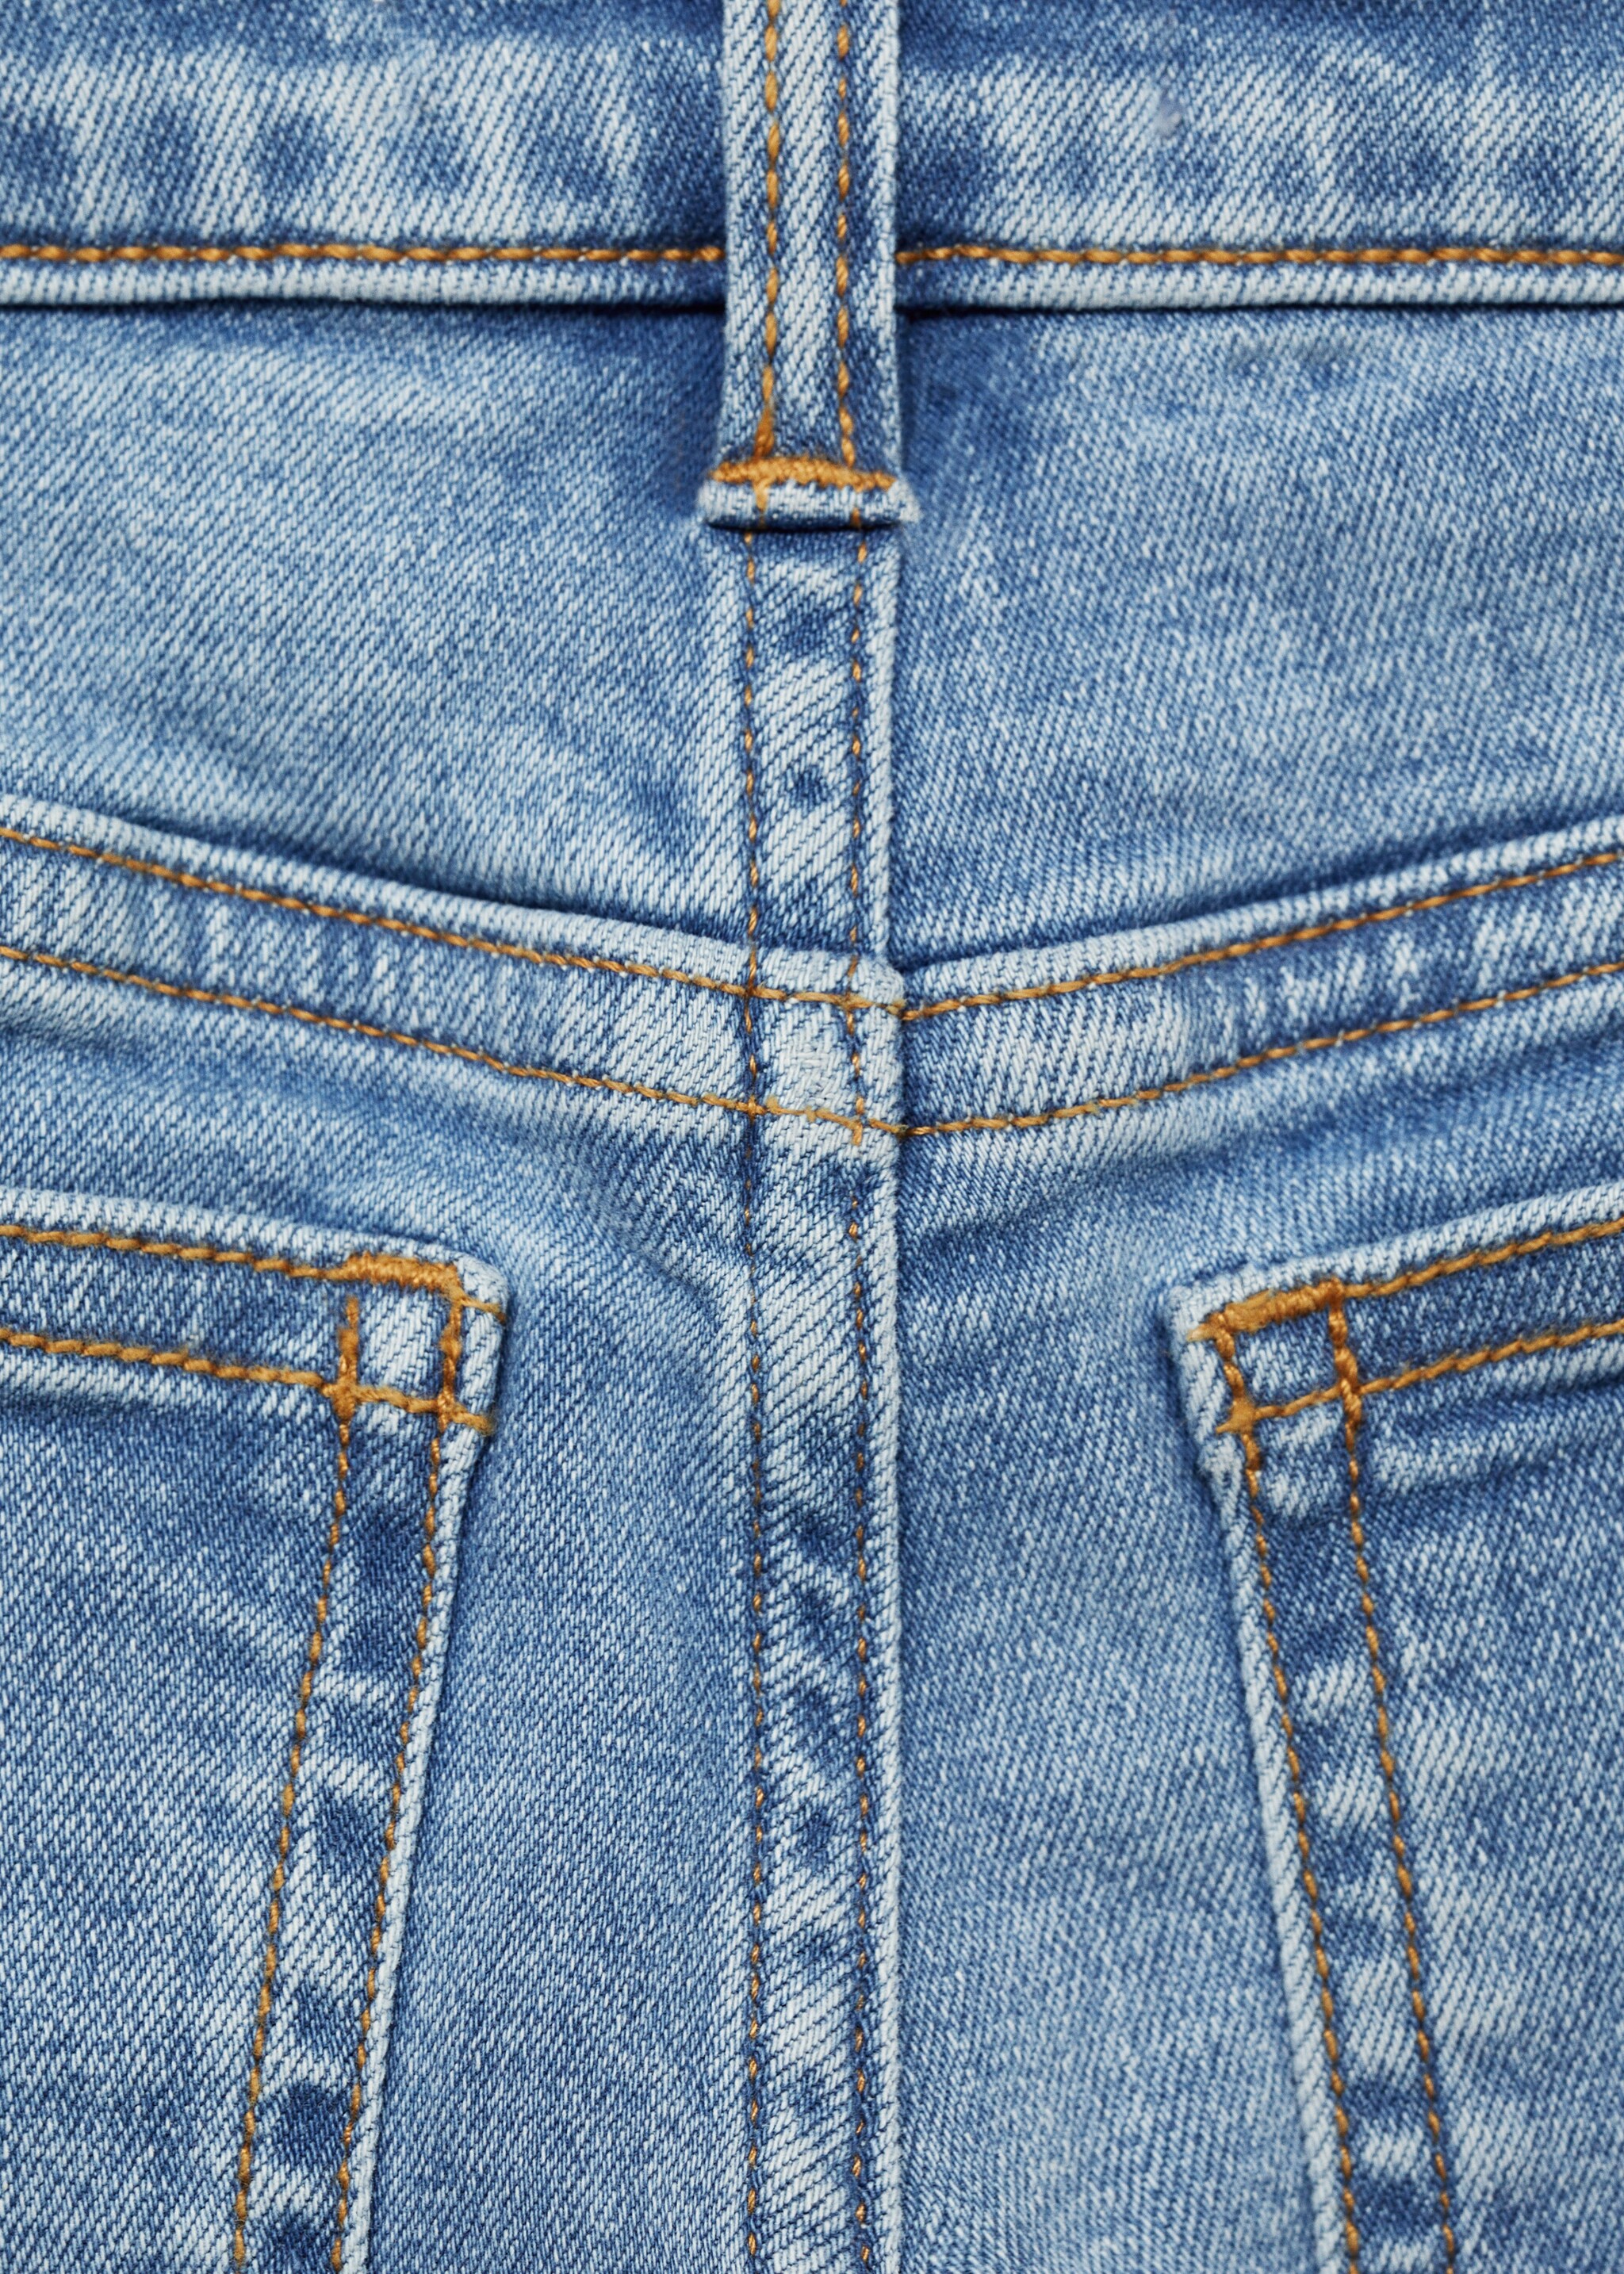 Jeans skinny  - Pormenor do artigo 0